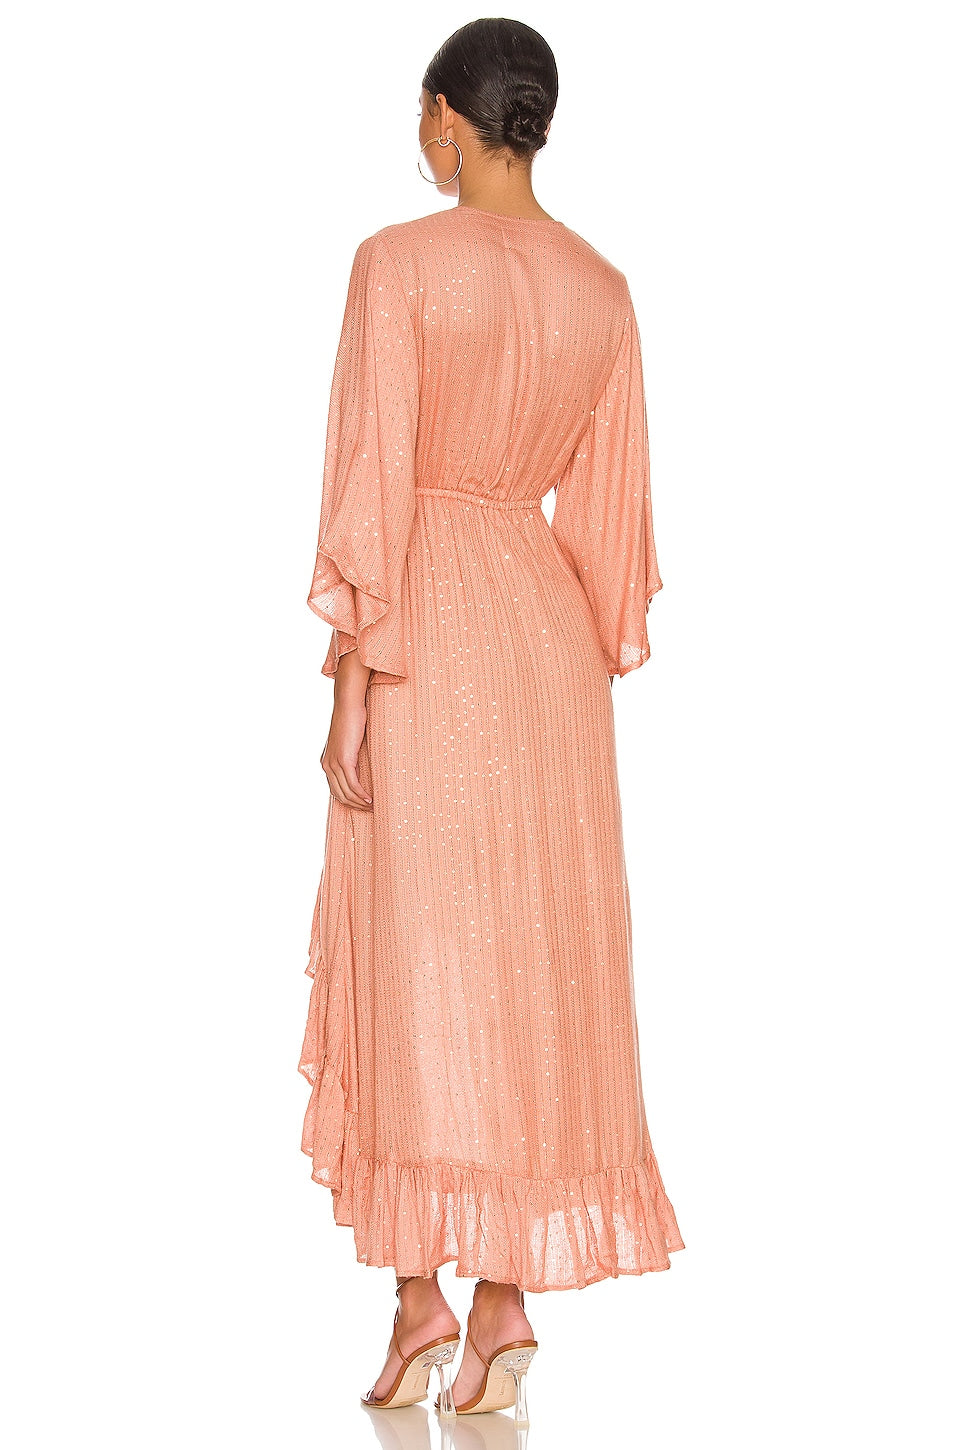 Sundress Juliana Dress in Saint Barth Terracotta SIZE X-SMALL